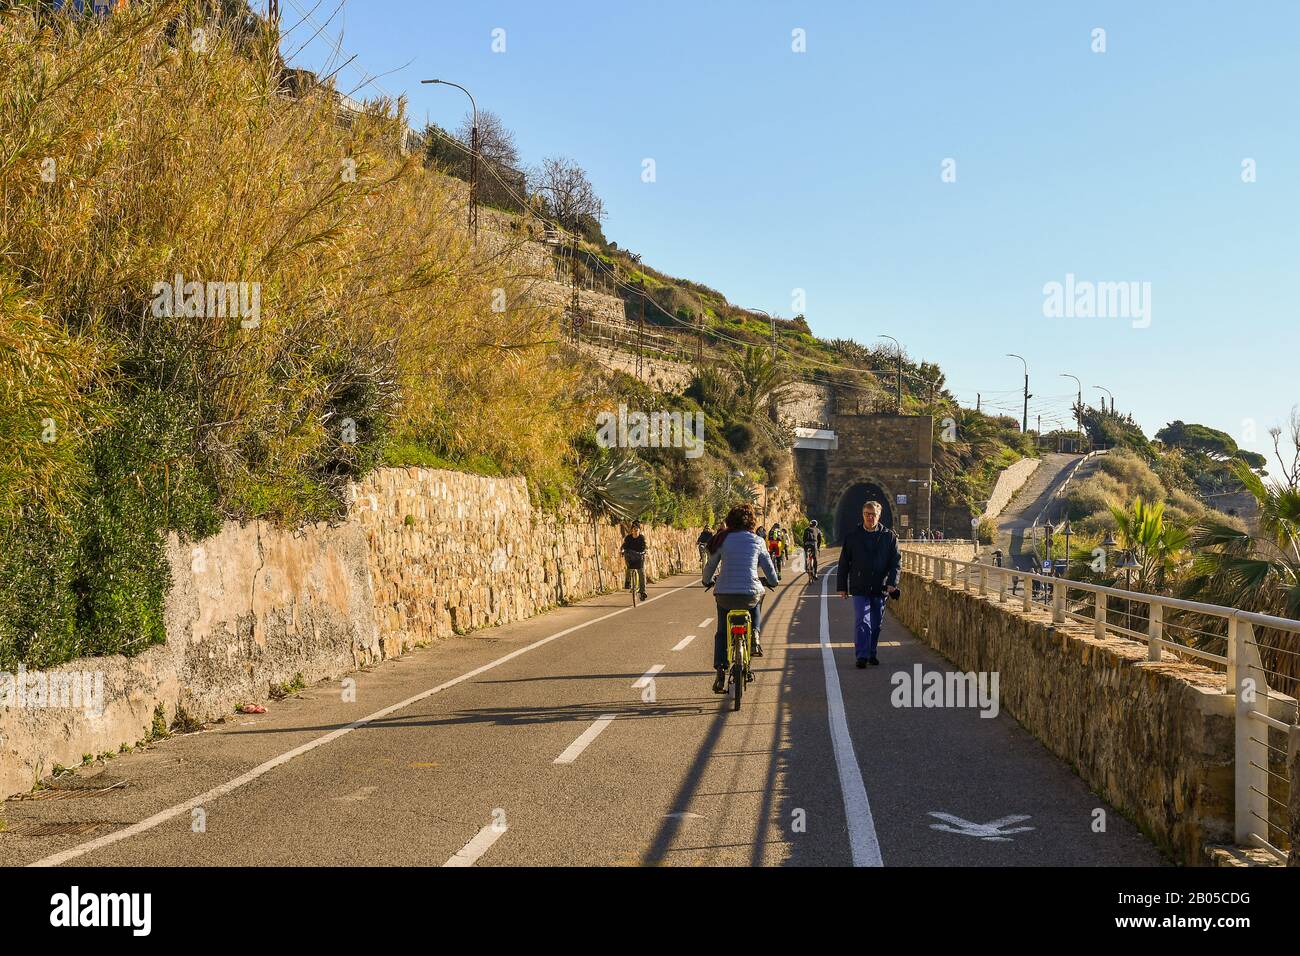 Menschen und Touristen, die an einem sonnigen Tag auf dem Radweg der Blumenriviera spazieren und radeln, Sanremo, Provinz Imperia, Ligurien, Italien Stockfoto